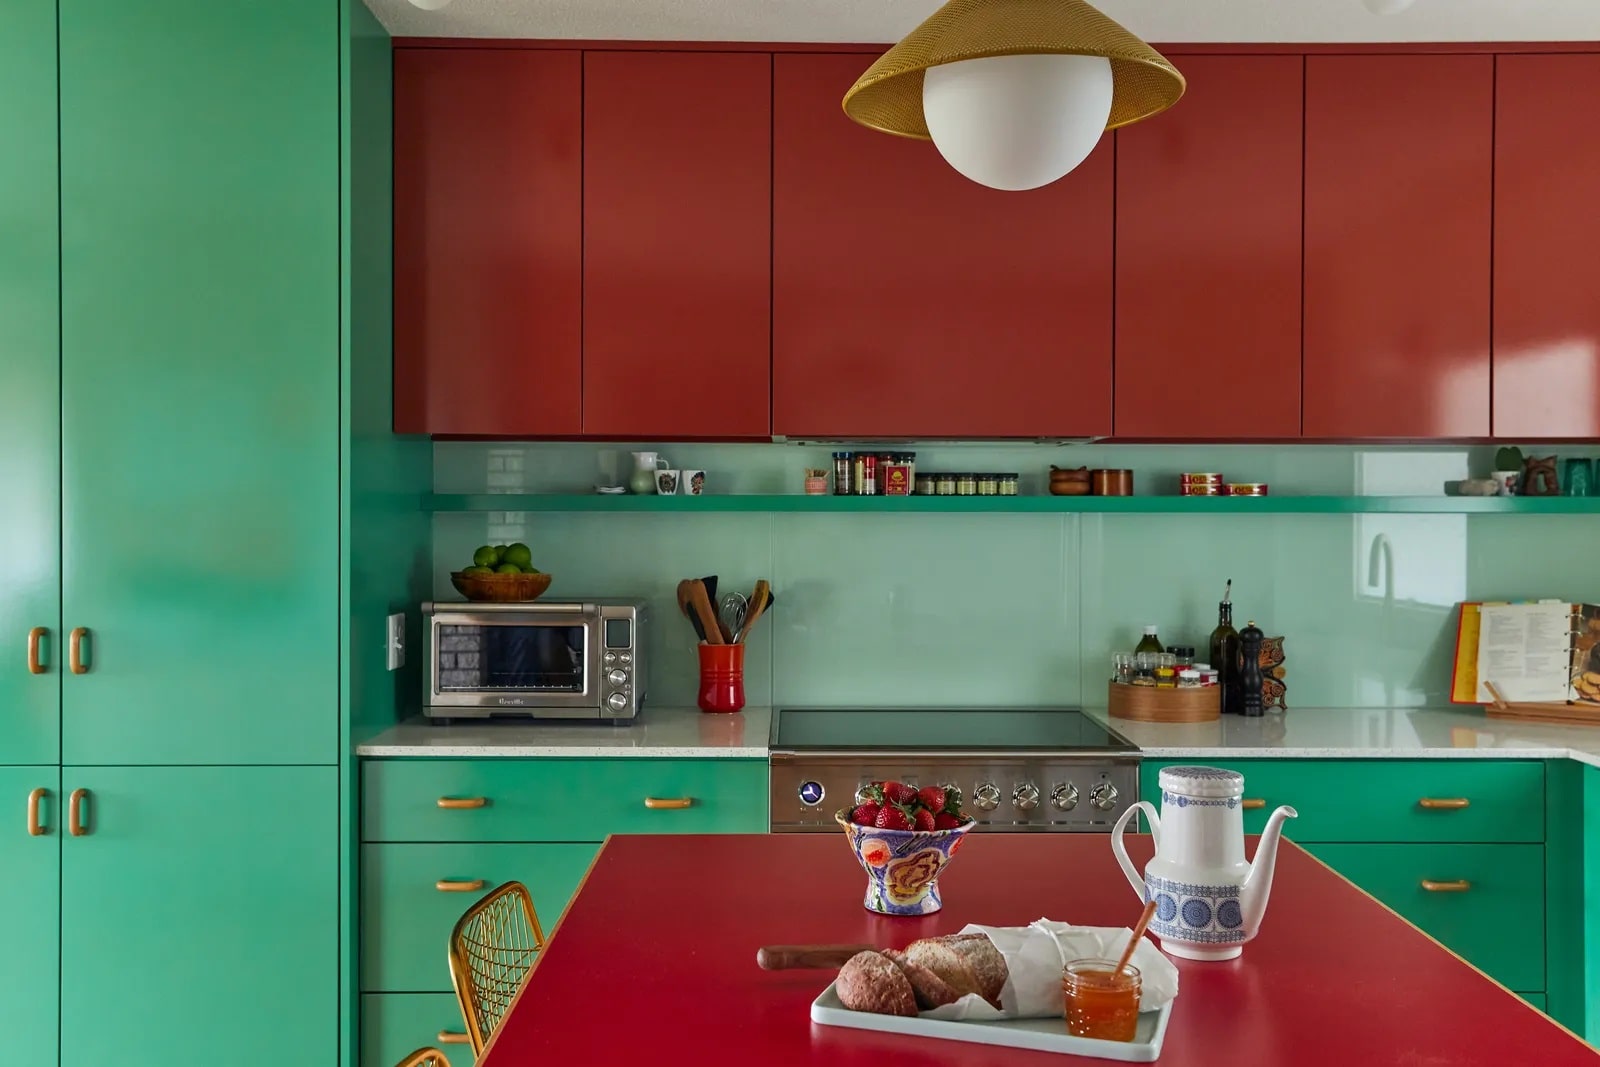 رنگ سبز و قرمز برای کابینت بزرگ آشپزخانه